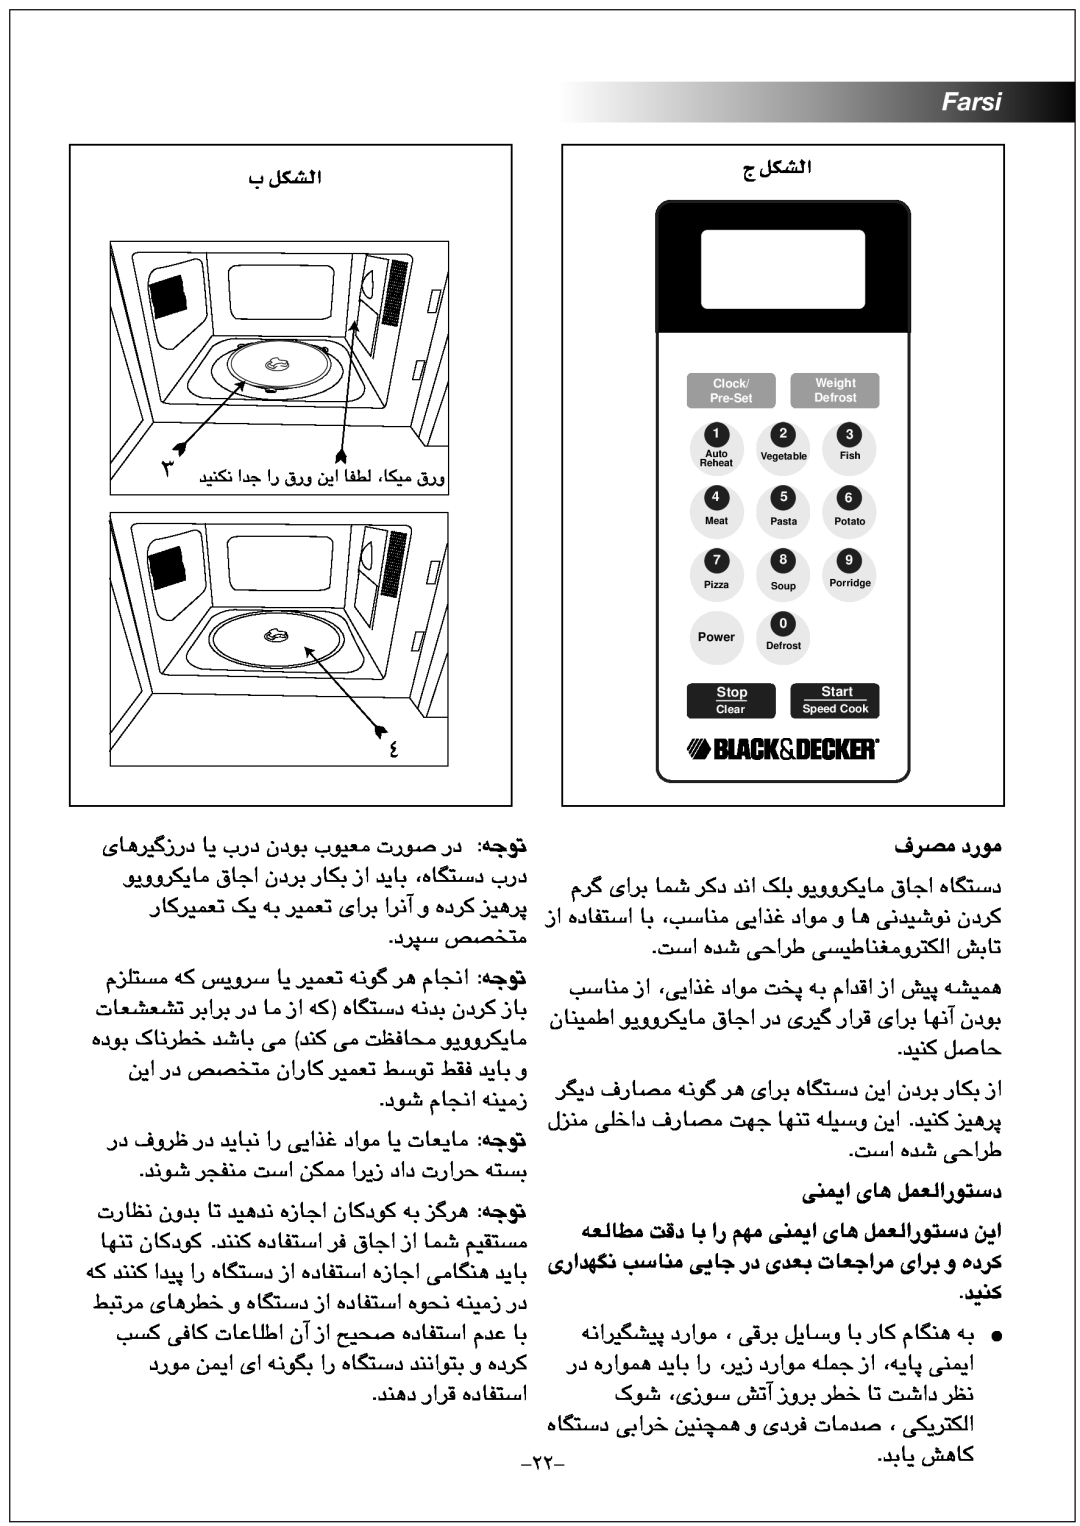 Black & Decker MZ2300P manual Ü πµûdG, Farsi, ﻑﺮﺼﻣ ﺩﺭﻮﻣ, ﻪﻌﻟﺎﻄﻣ ﺖﻗﺩ ﺎﺑ ﺍﺭ ﻢﻬﻣ ﯽﻨﻤﯾﺍ ﯼﺎﻫ ﻞﻤﻌﻟﺍﺭﻮﺘﺳﺩ ﻦﯾﺍ, ﺪﯿﻨﮐ 